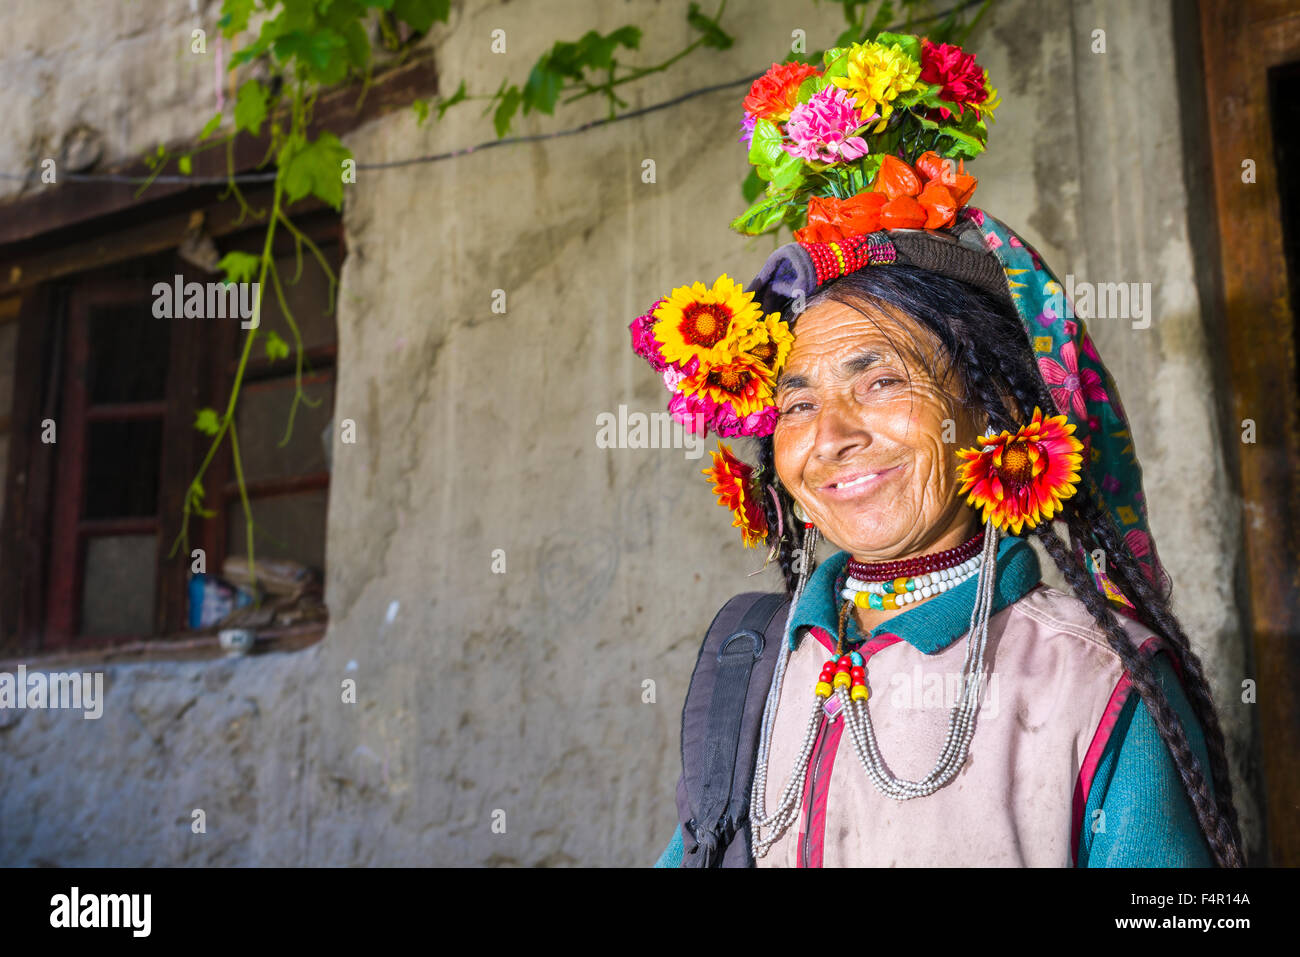 Una donna della tribù brokpa, una gara arien, nel suo abito tradizionale con una disposizione del fiore portato sulla testa Foto Stock